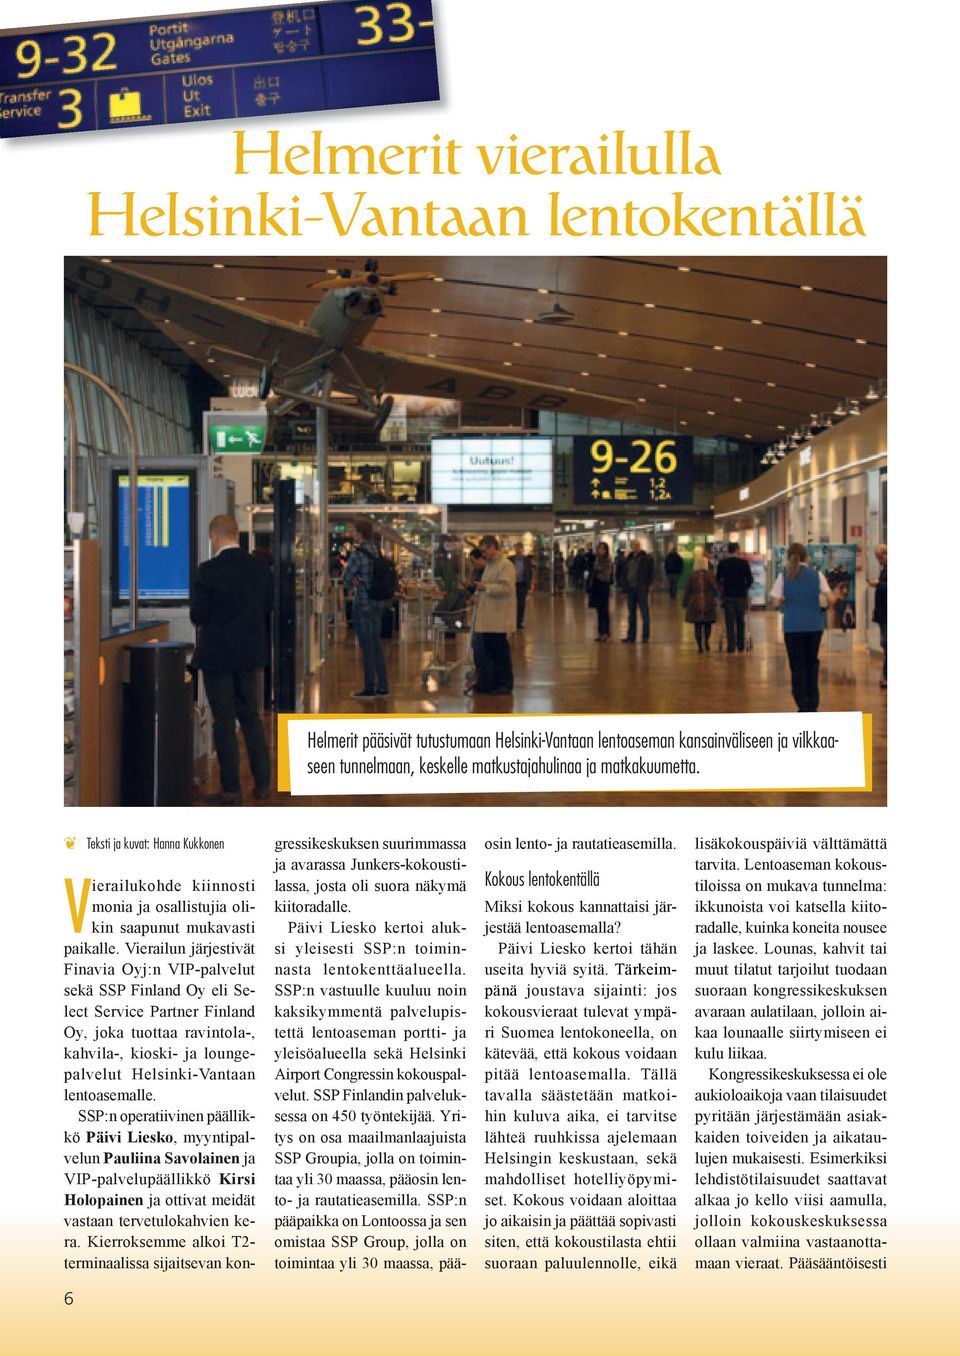 Vierailun järjestivät Finavia Oyj:n VIP-palvelut sekä SSP Finland Oy eli Select Service Partner Finland Oy, joka tuottaa ravintola-, kahvila-, kioski- ja loungepalvelut Helsinki-Vantaan lentoasemalle.